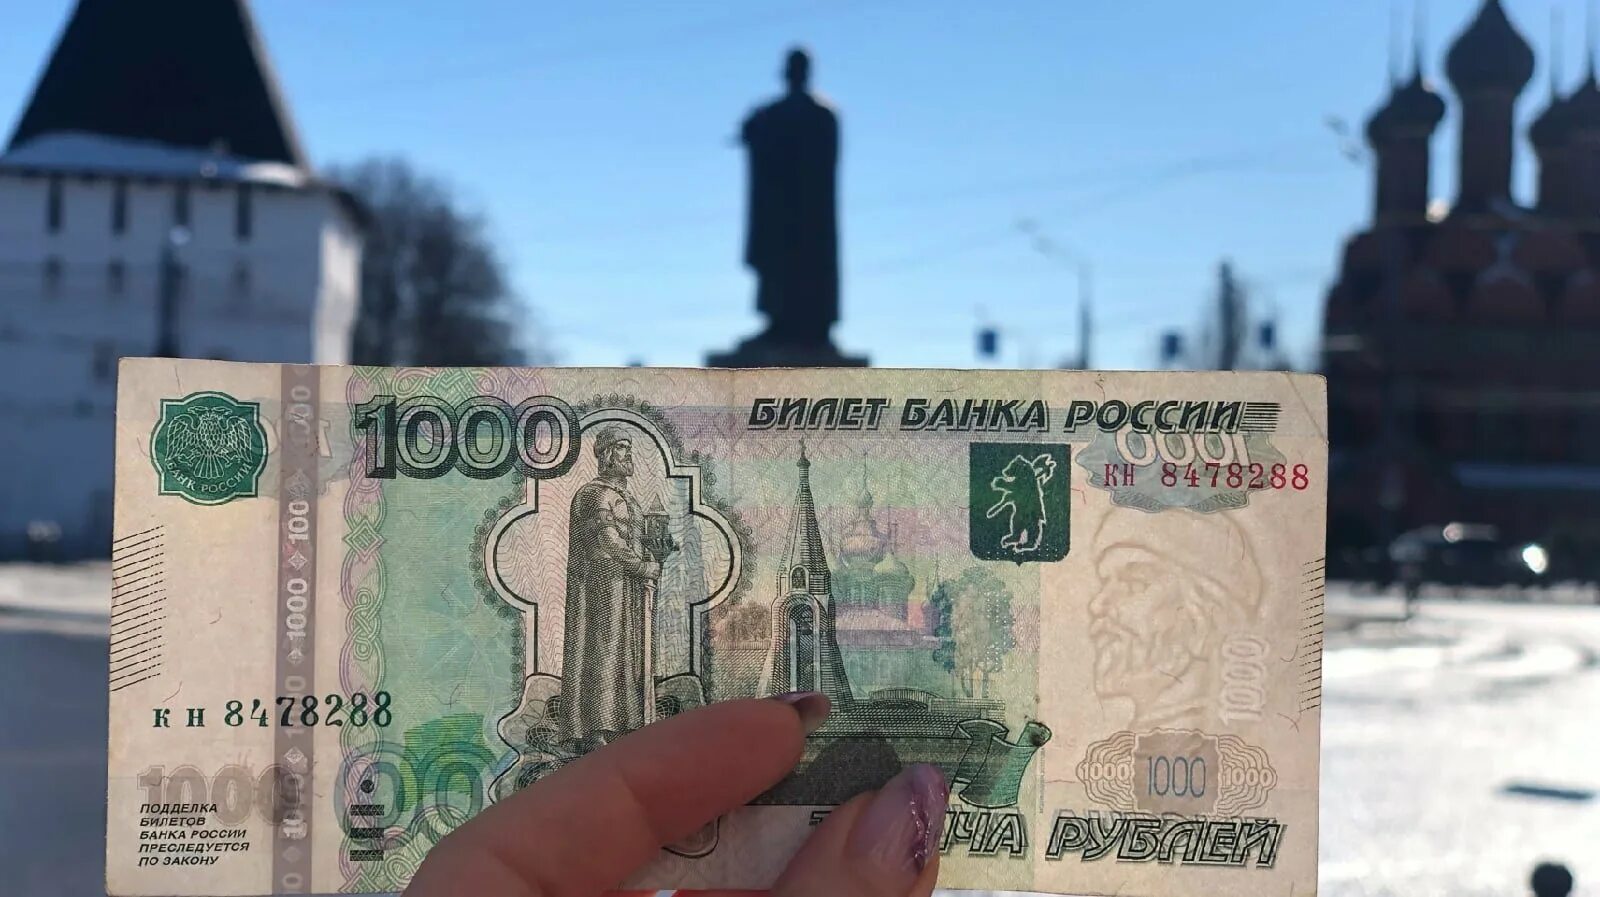 3 5 1000 рублей. Купюра 1000 рублей. Банкнота 1000 рублей. Тысячная купюра.